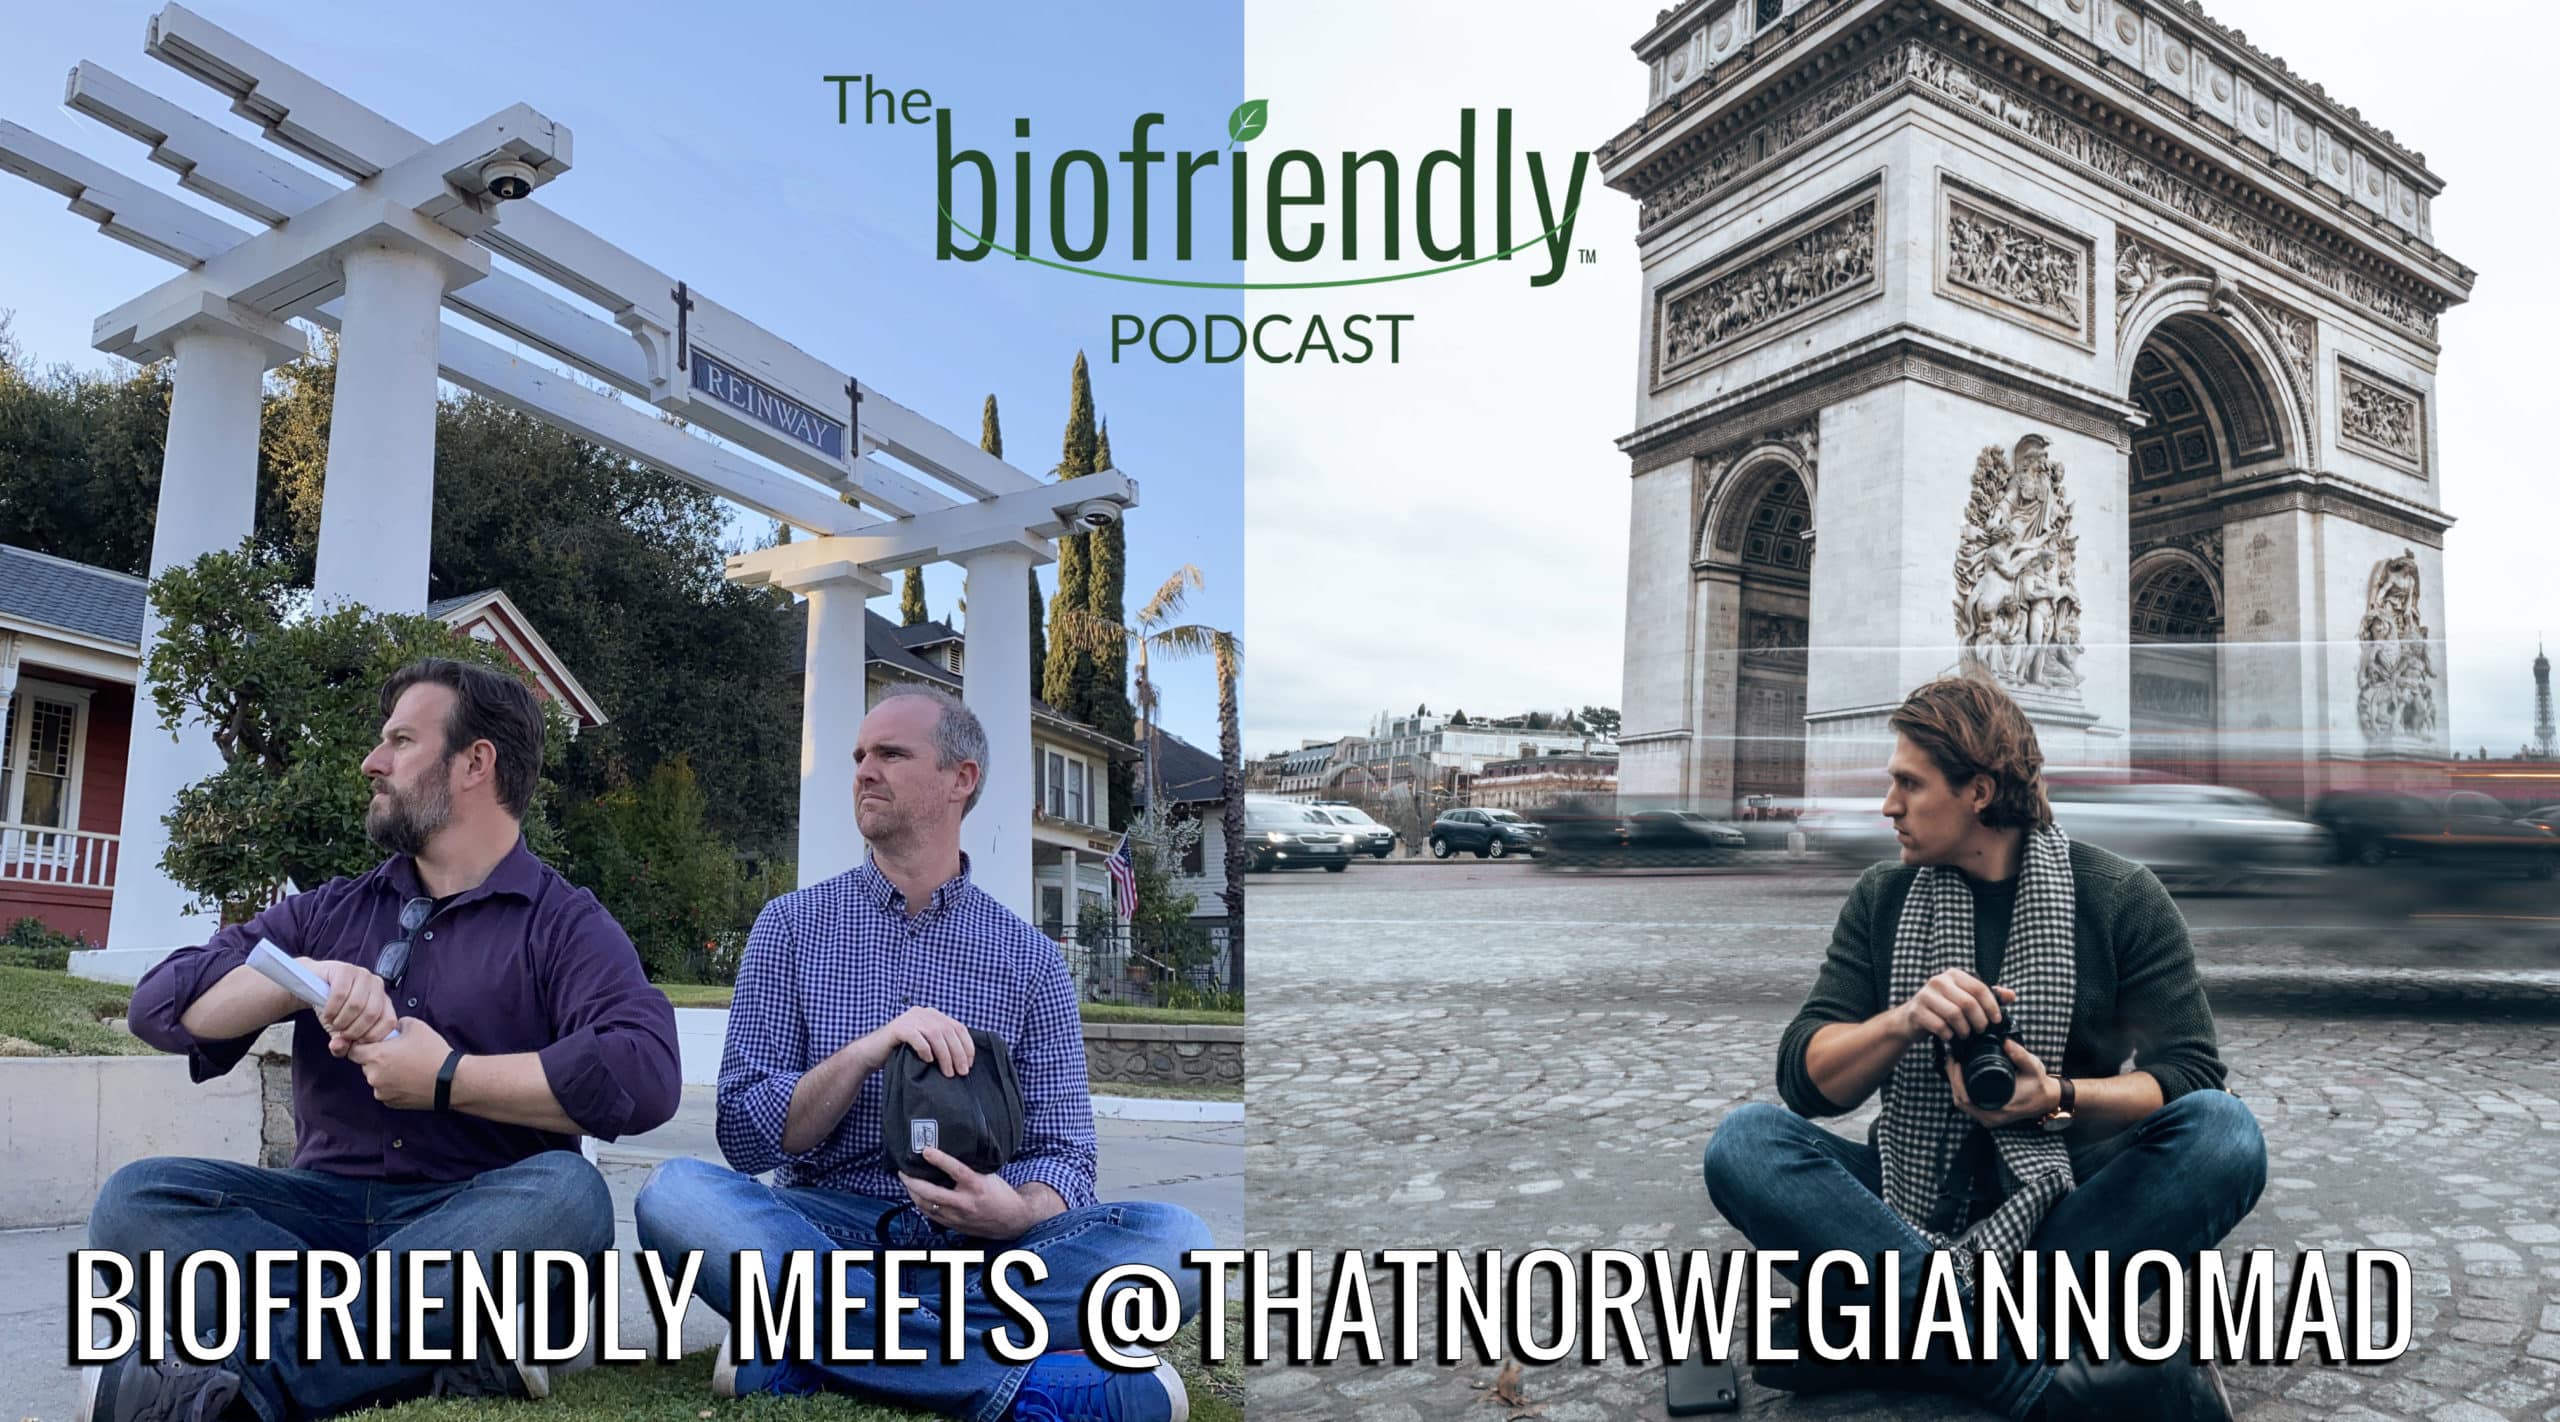 The Biofriendly Podcast - Episode 52 - Biofriendly Meets @ThatNorwegianNomad